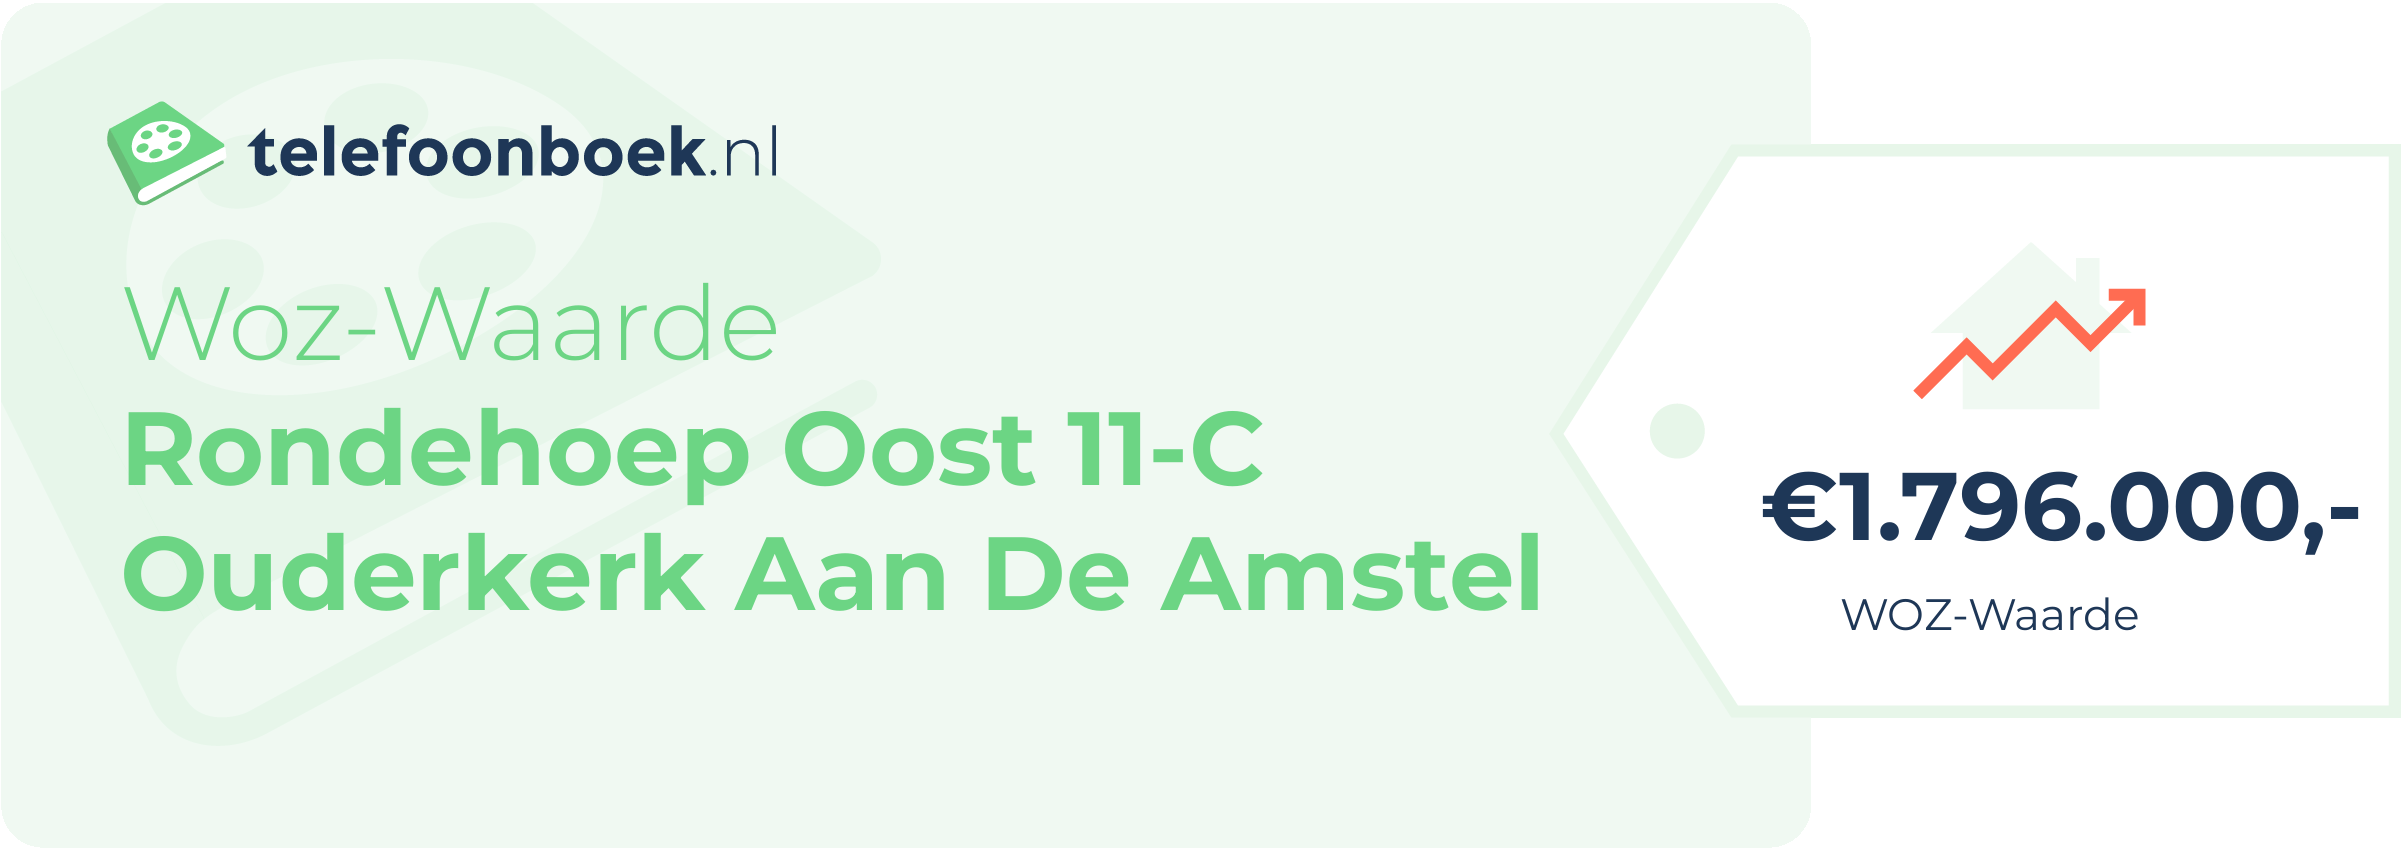 WOZ-waarde Rondehoep Oost 11-C Ouderkerk Aan De Amstel